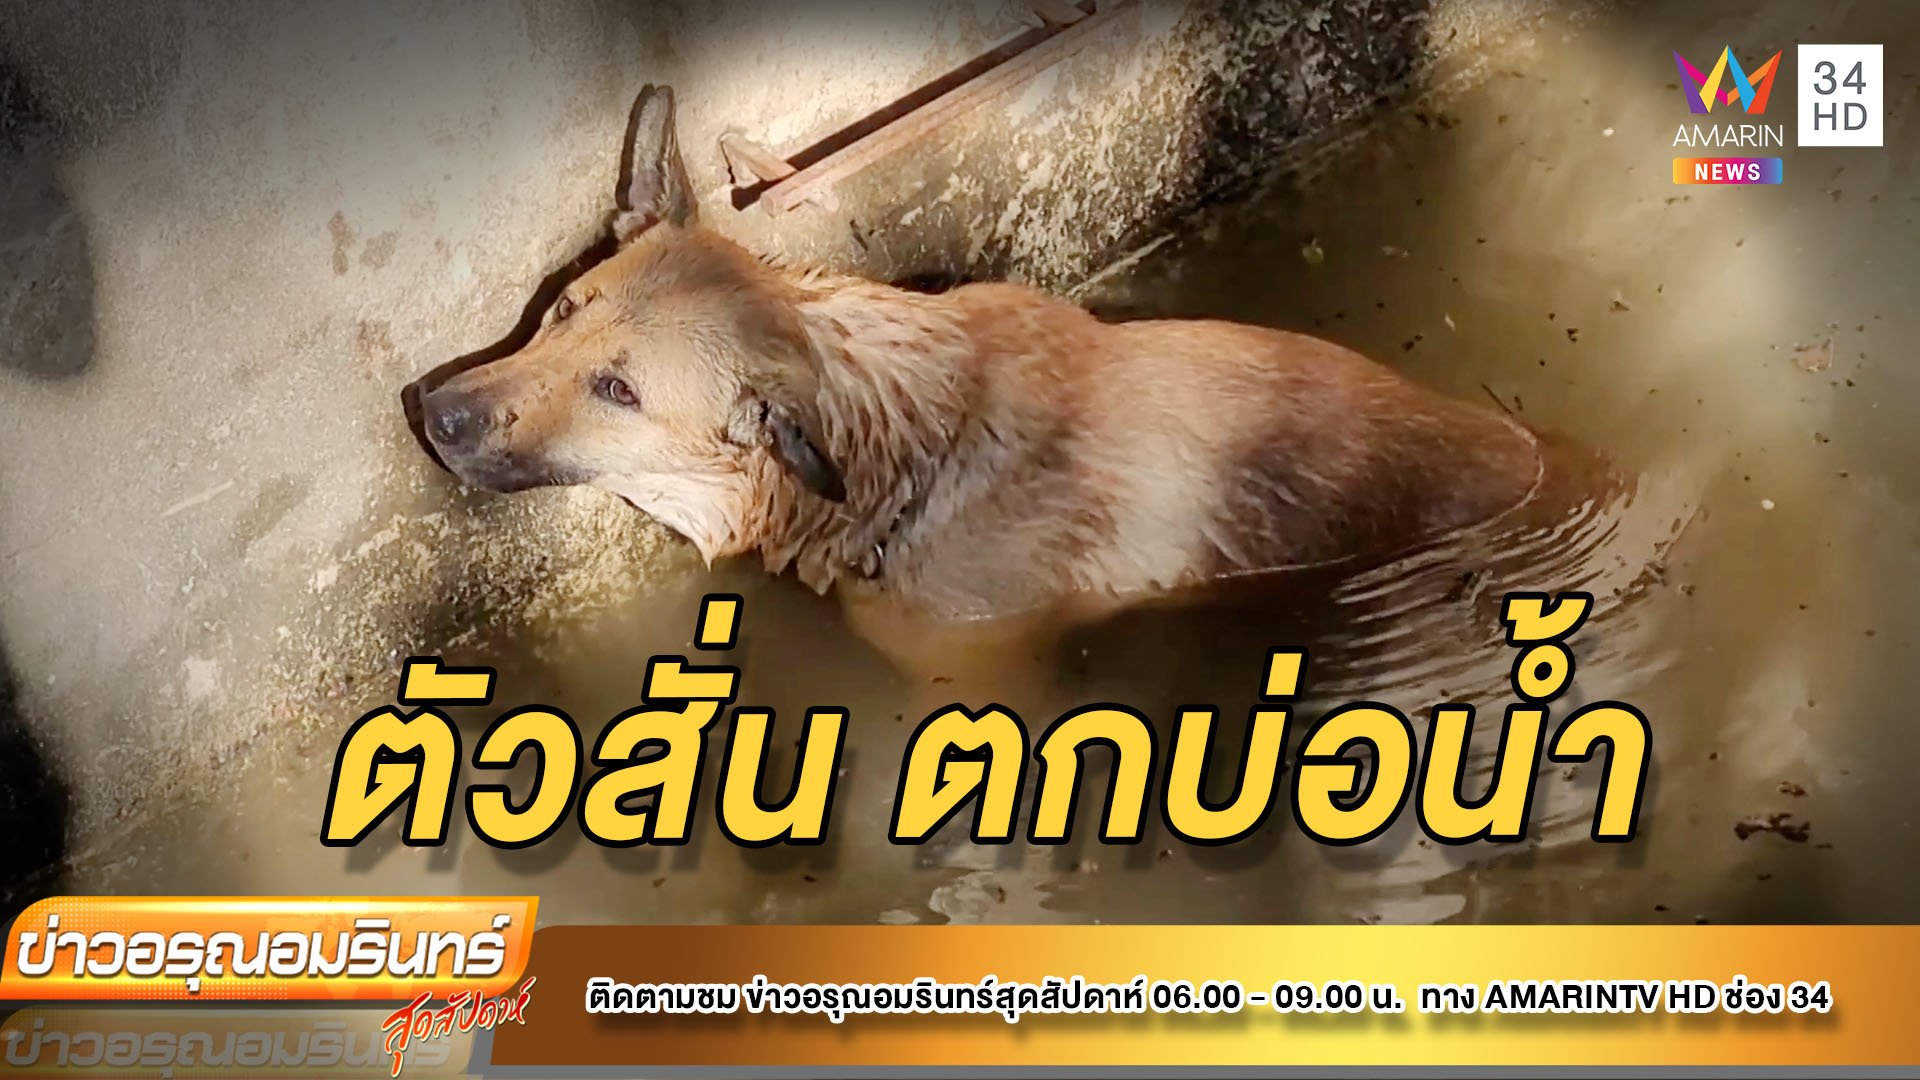 ช่วยหมาวิ่งหนีพลุเคานต์ดาวน์ ตกบ่อน้ำลึก 10 เมตร | ข่าวอรุณอมรินทร์ | 2 ม.ค. 65 | AMARIN TVHD34